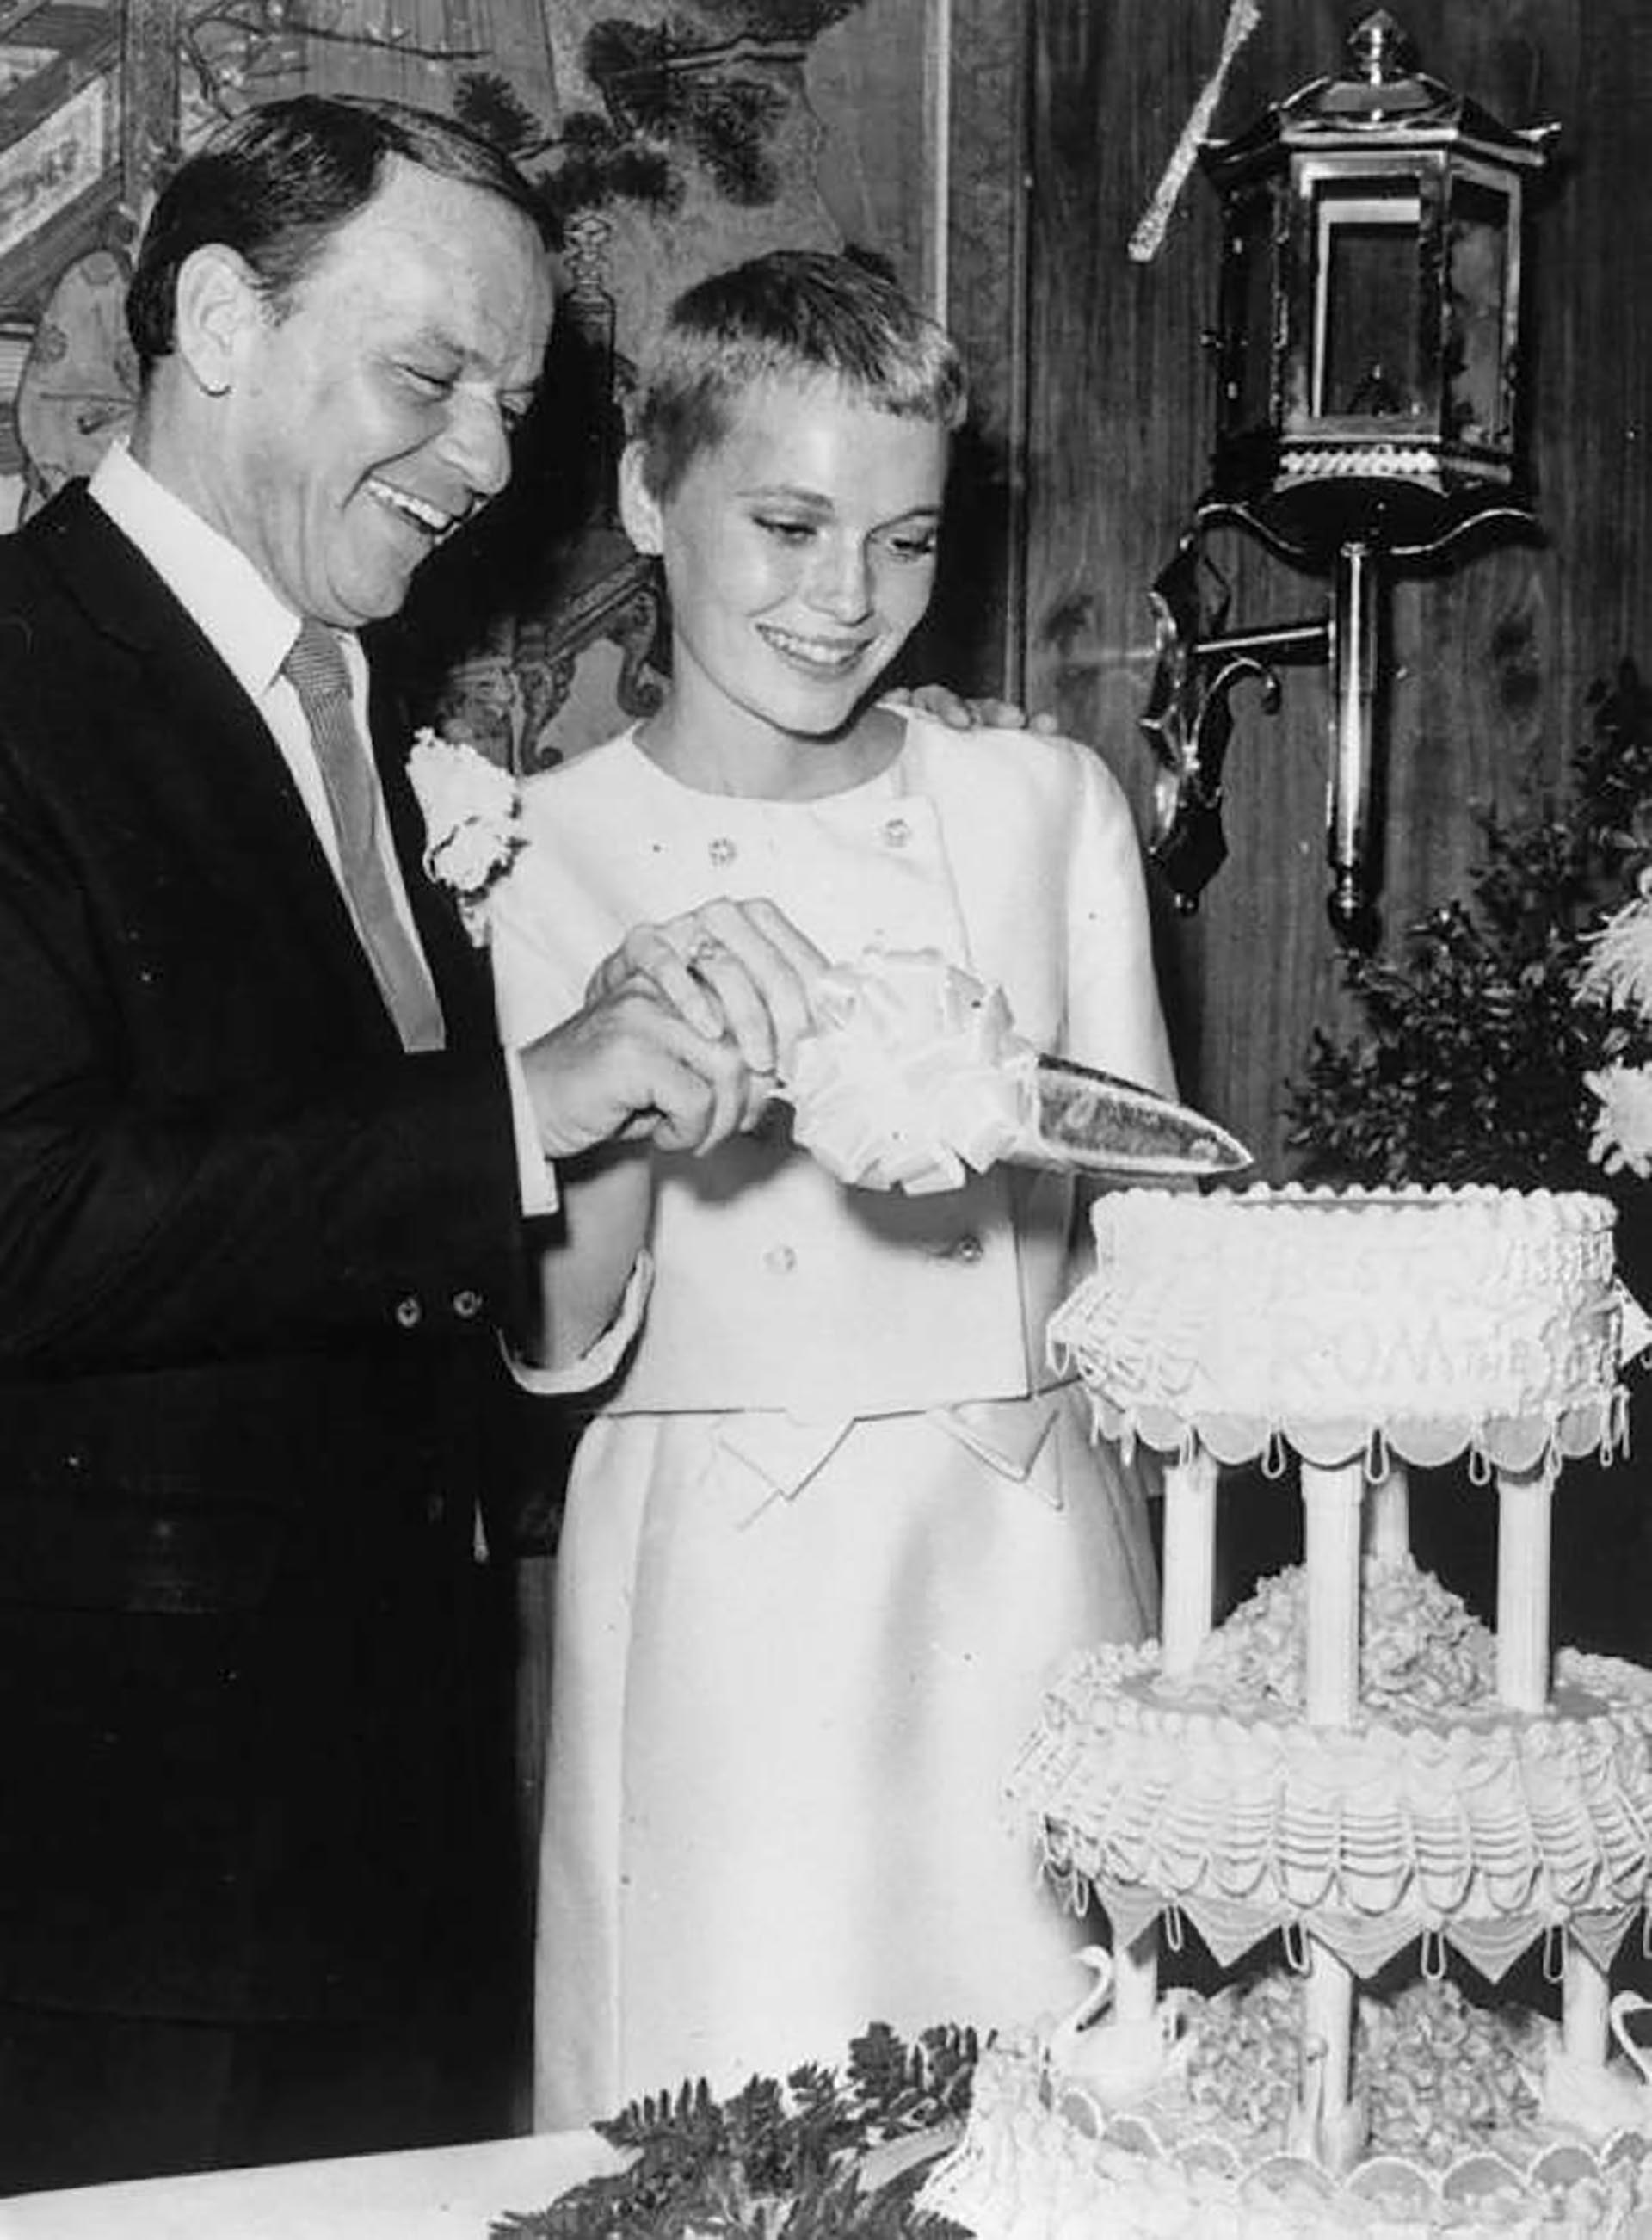  La polémica boda de Frank Sinatra con su esposa Mia Farrow; el tenía 47 años y ella 18